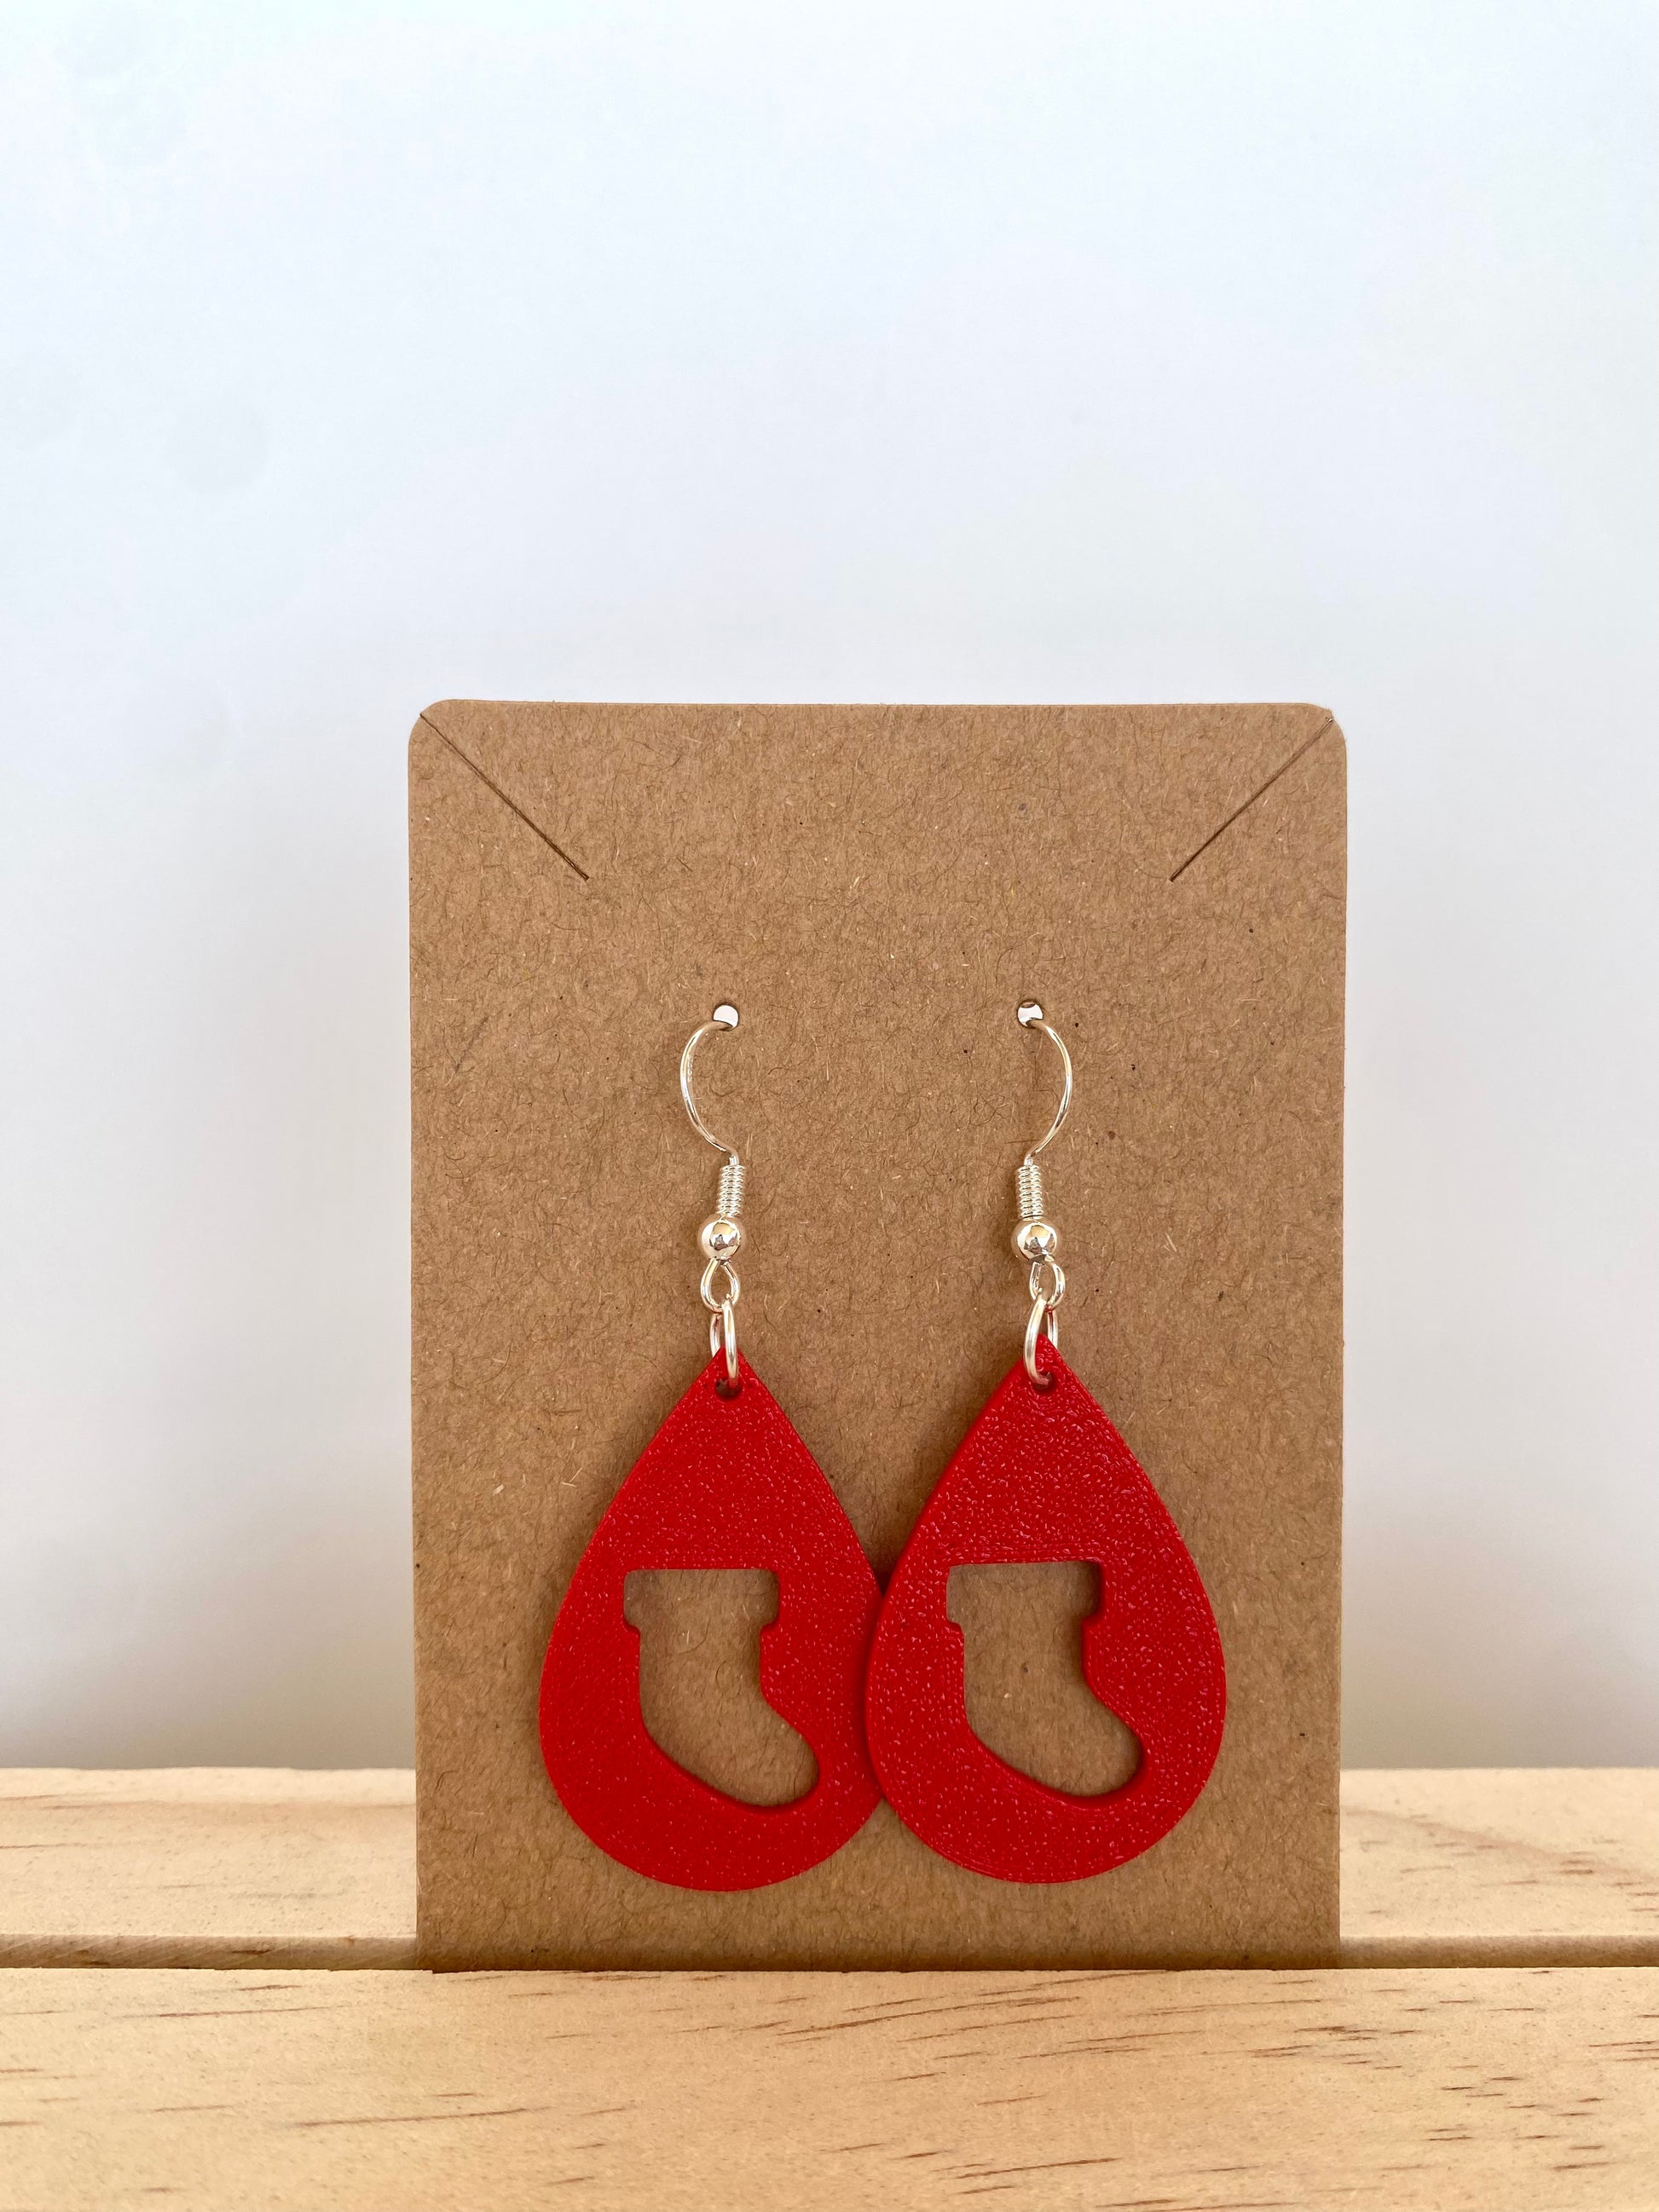 Teardrop Stocking Silhouette Earrings in red.